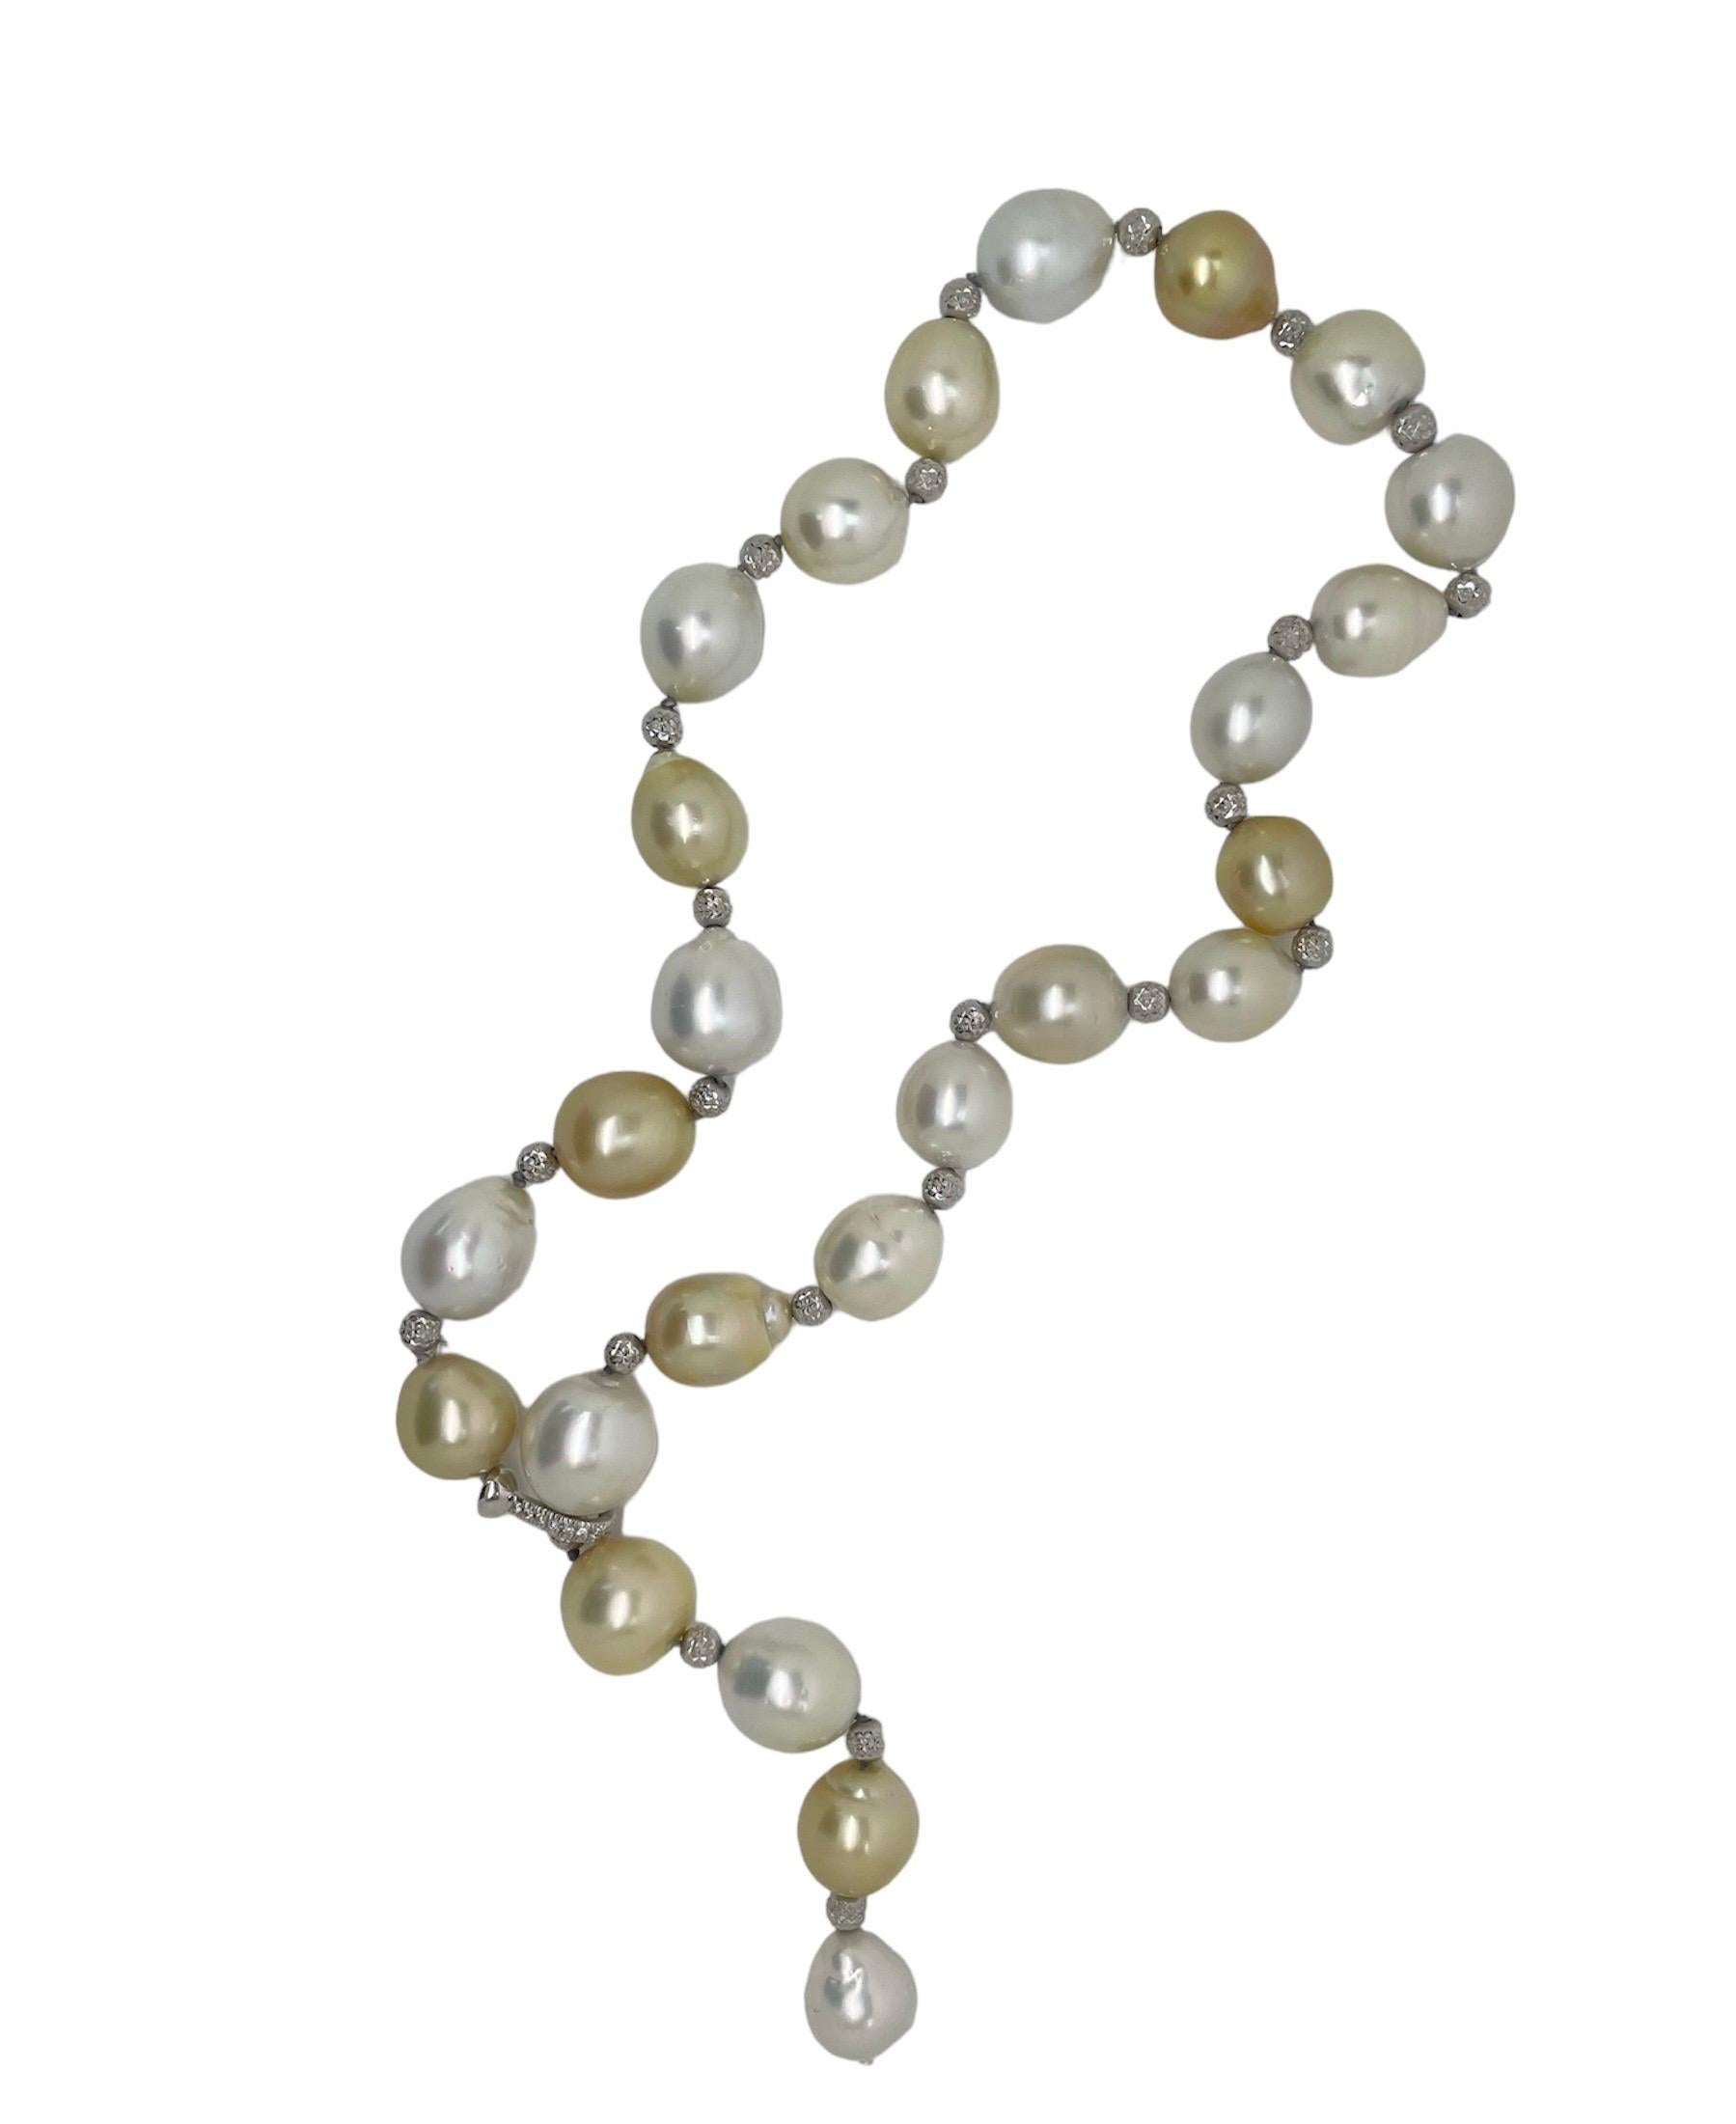 Diese wunderschöne Barockperlenkette ist mit glänzenden weißen, cremefarbenen und goldenen Perlen aufgereiht, die mit strukturierten Weißgold-Rondellen und einem verstellbaren Verschluss aus 18 Karat Weißgold und Diamanten verknotet sind, so dass